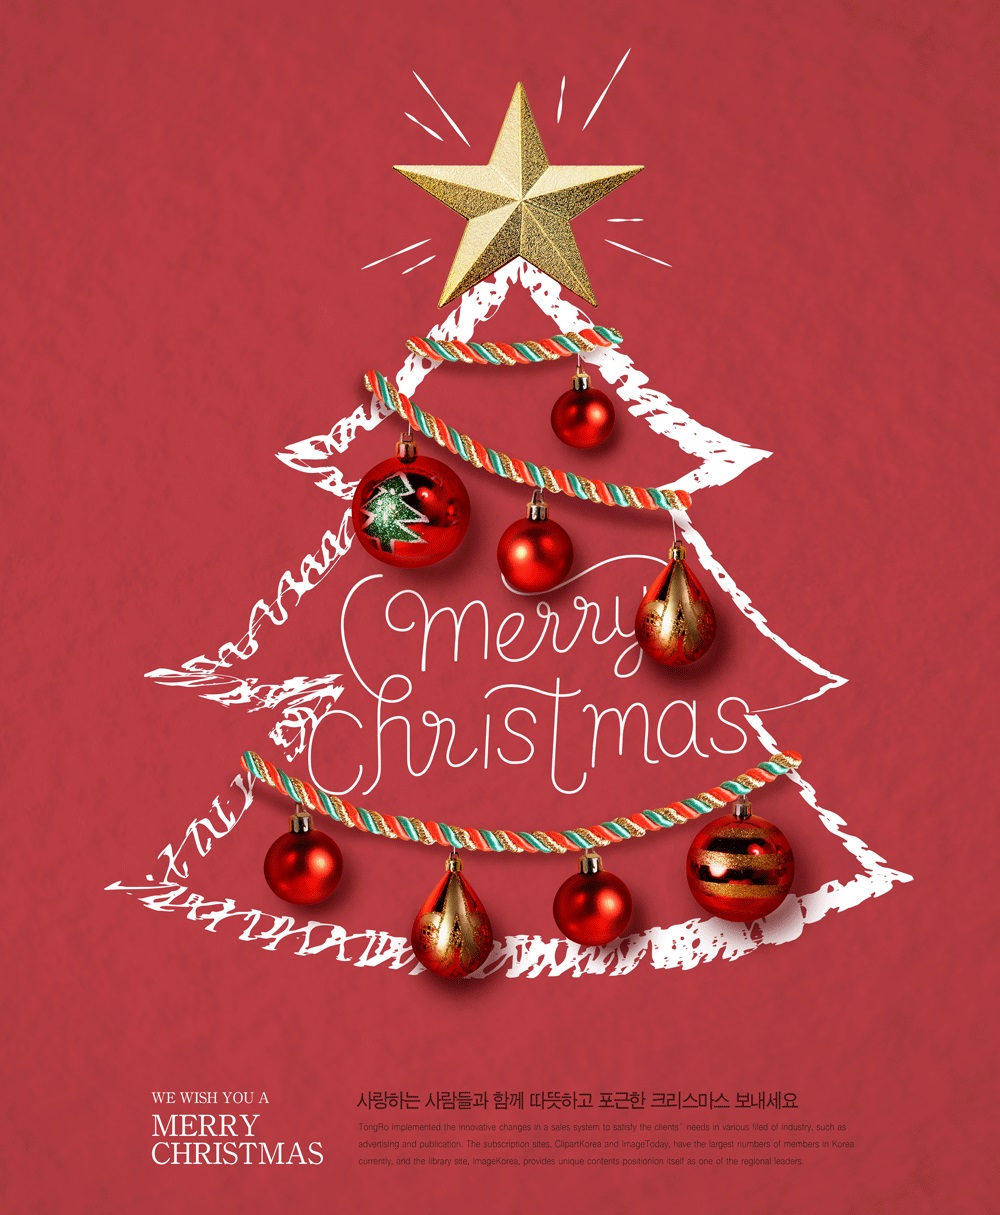 创意雪人圣诞树铃铛手套袜子广告海报 #318622